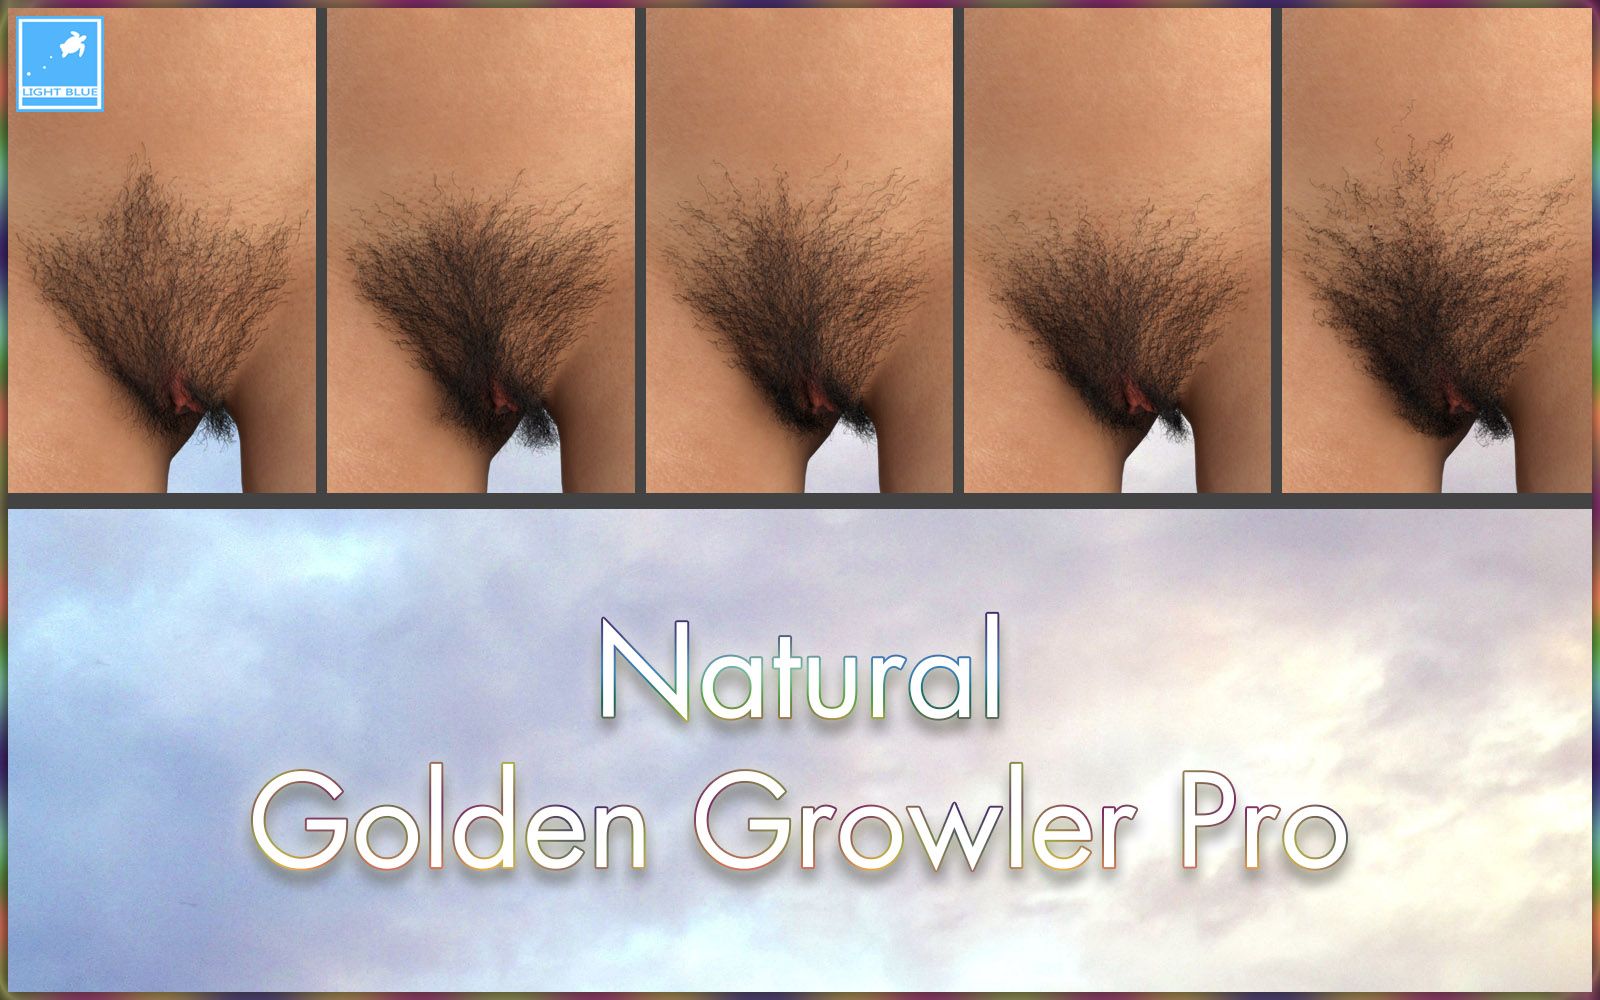 lightBLUE-Natural-Golden-Growler-Pro-promo-2.jpg